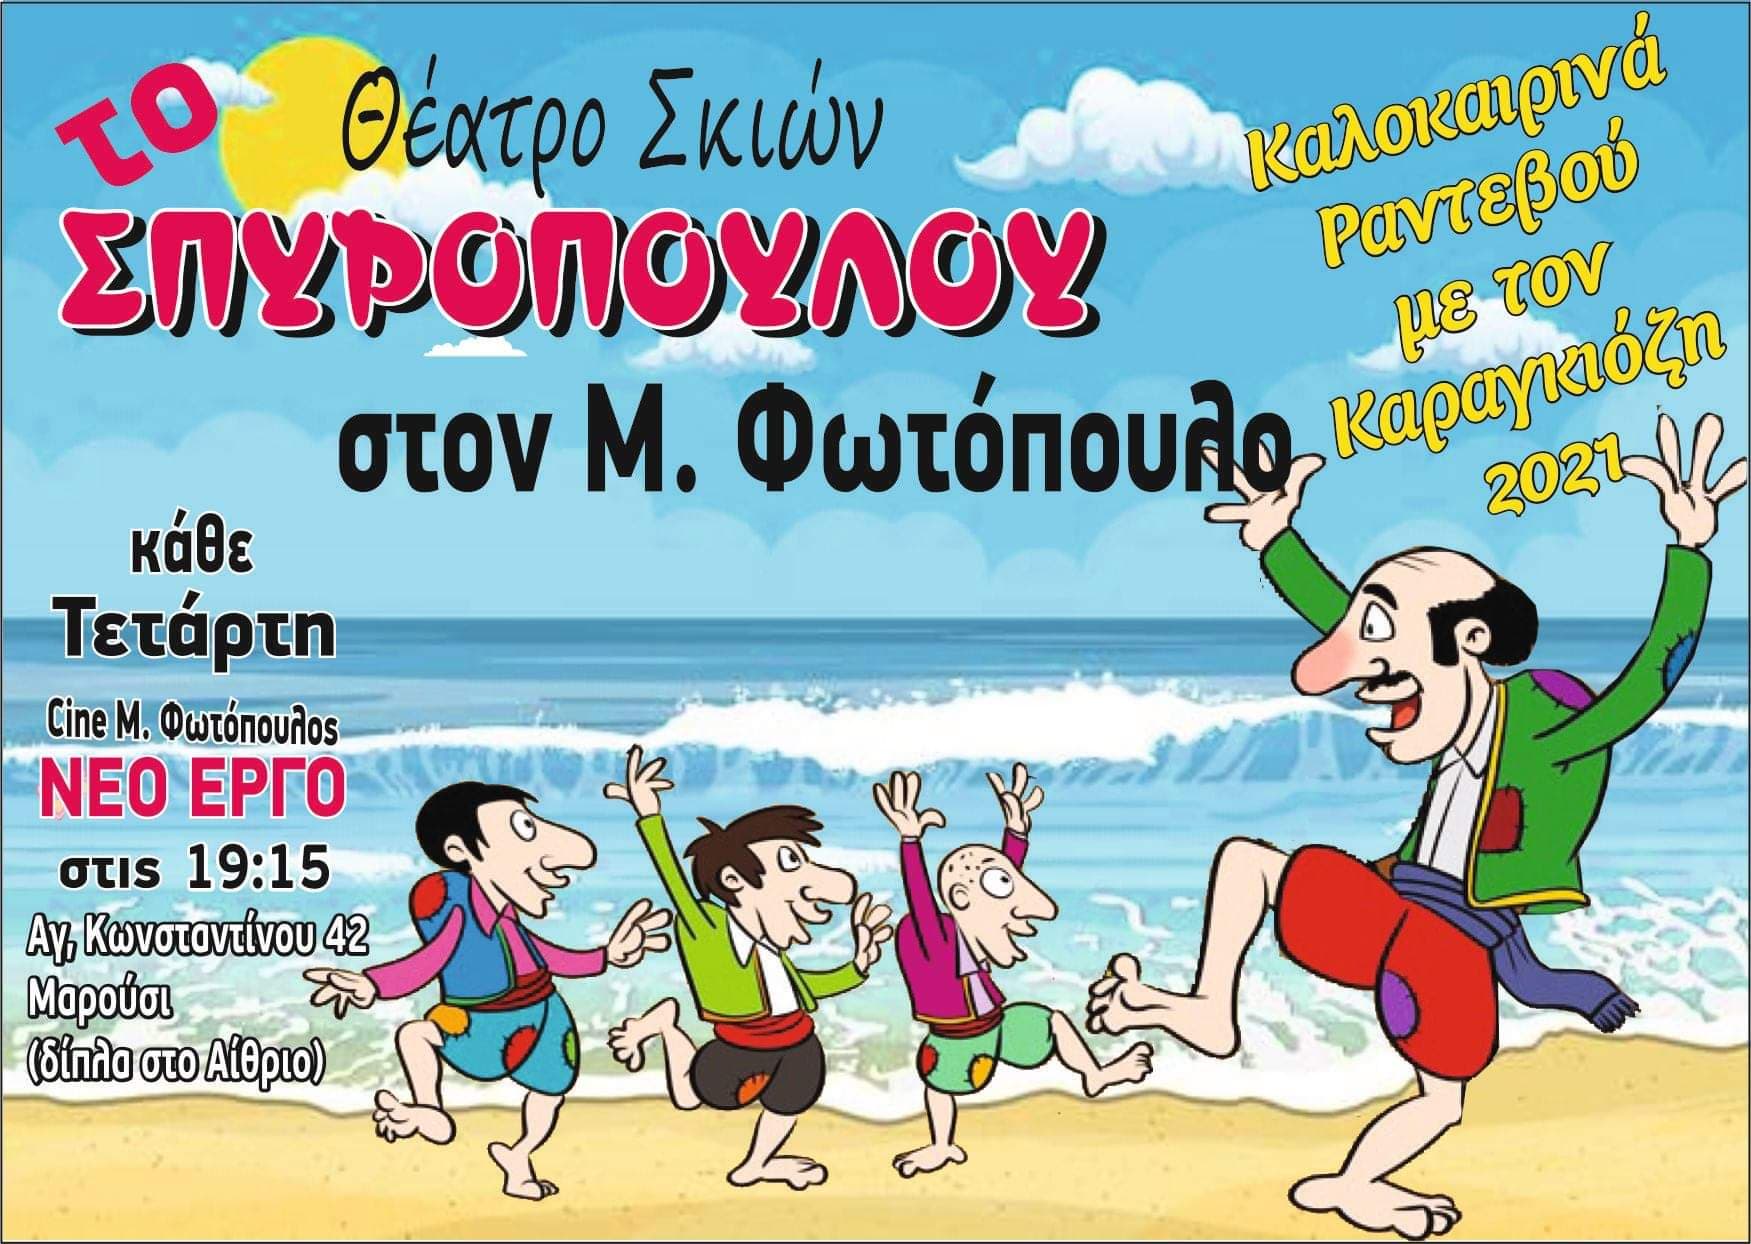 Ο Καραγκιόζης του Σπυρόπουλου κάθε Τετάρτη στο θερινό Σίνε “Μίμης Φωτόπουλος”